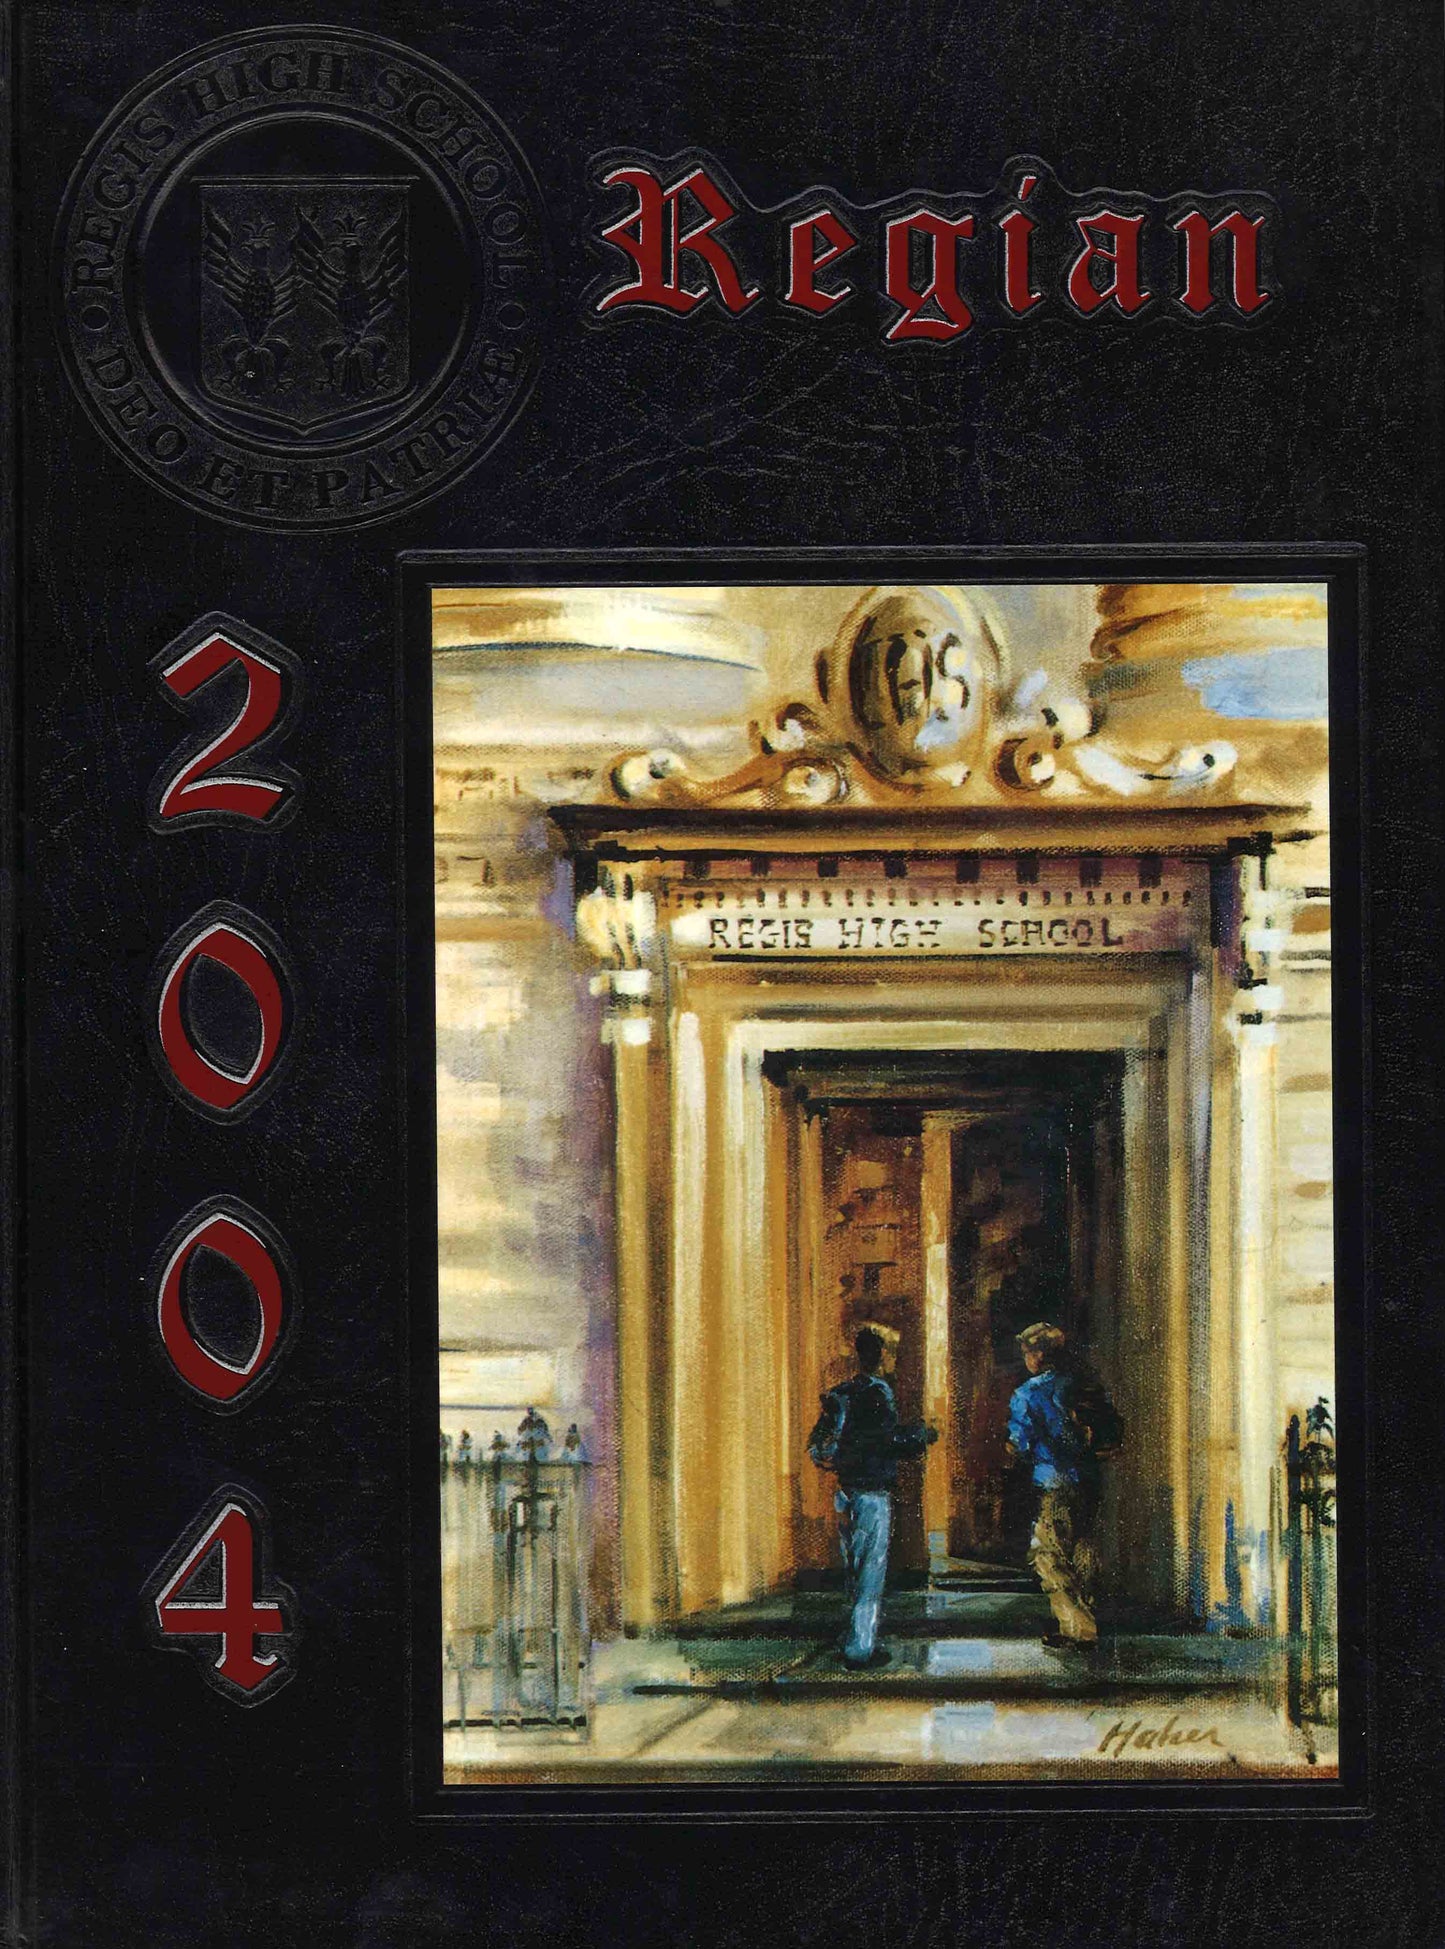 The Regian - 2004